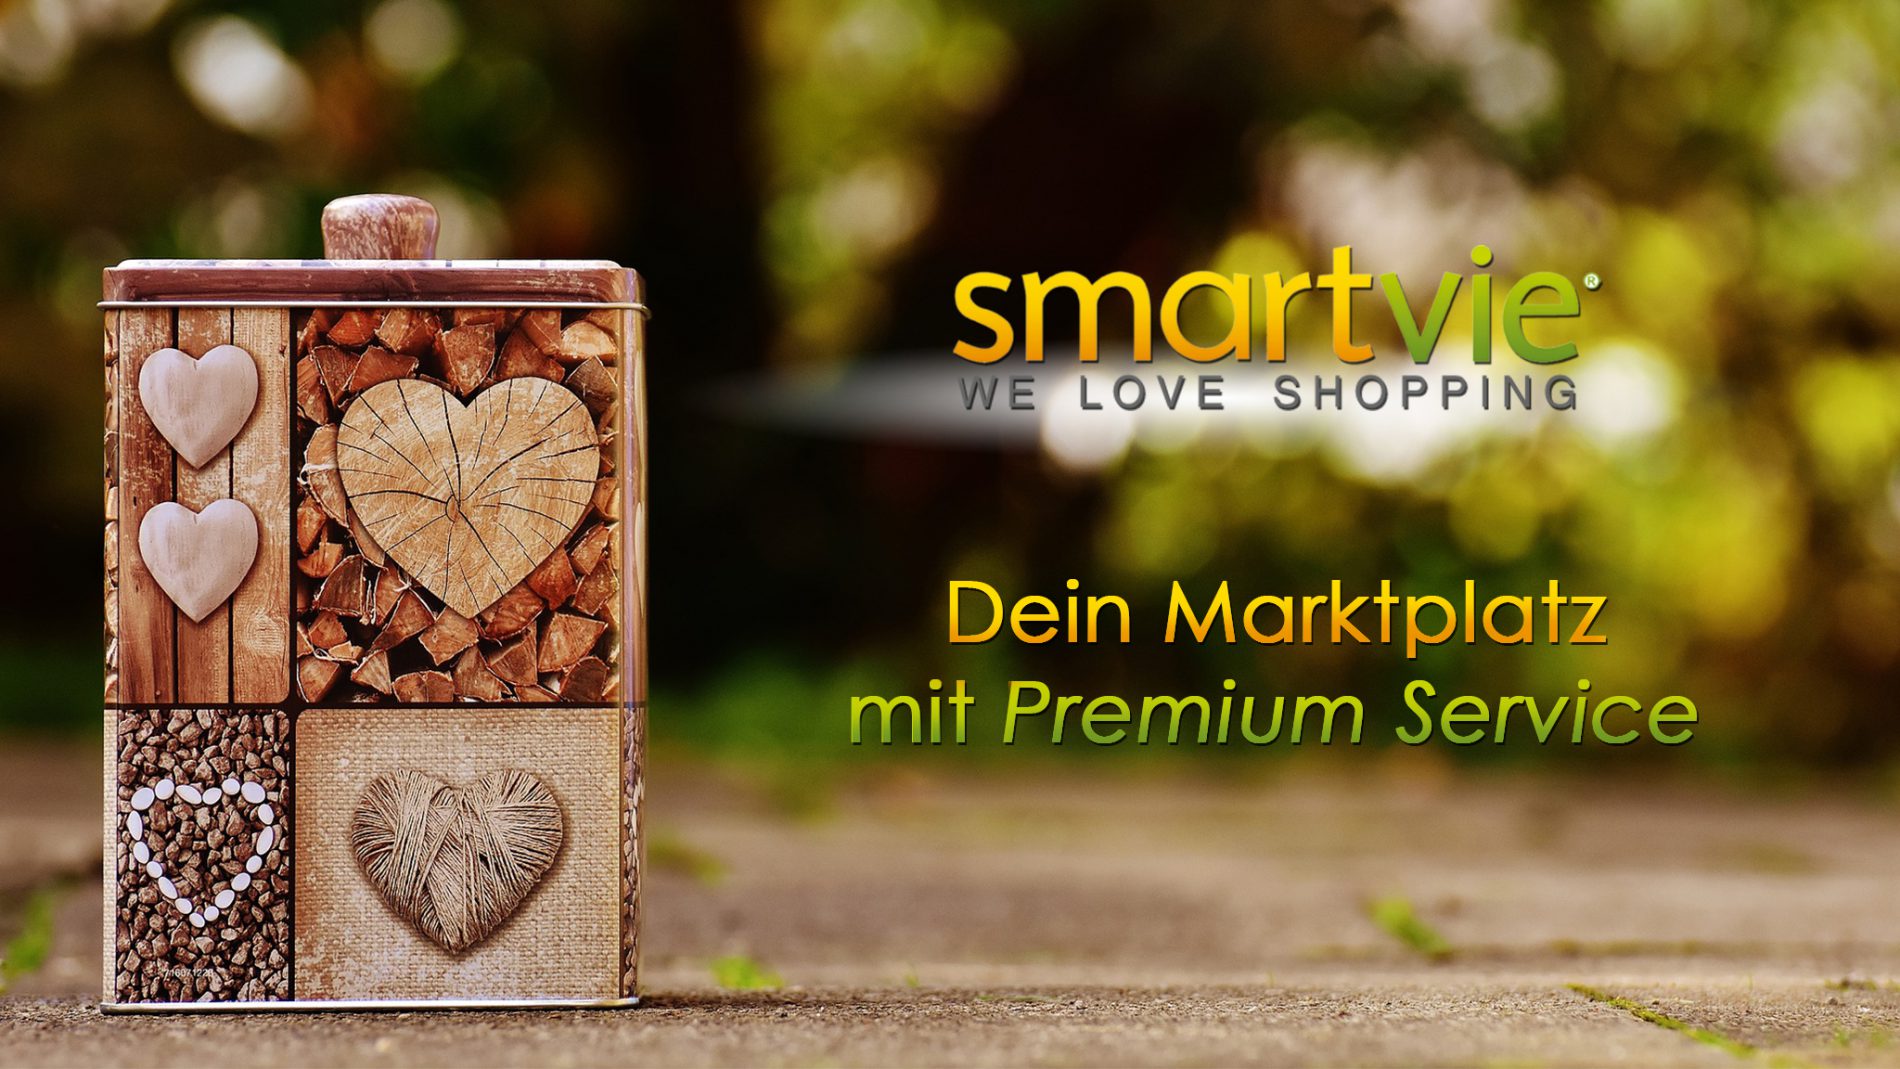 smartvie - We Love Shopping